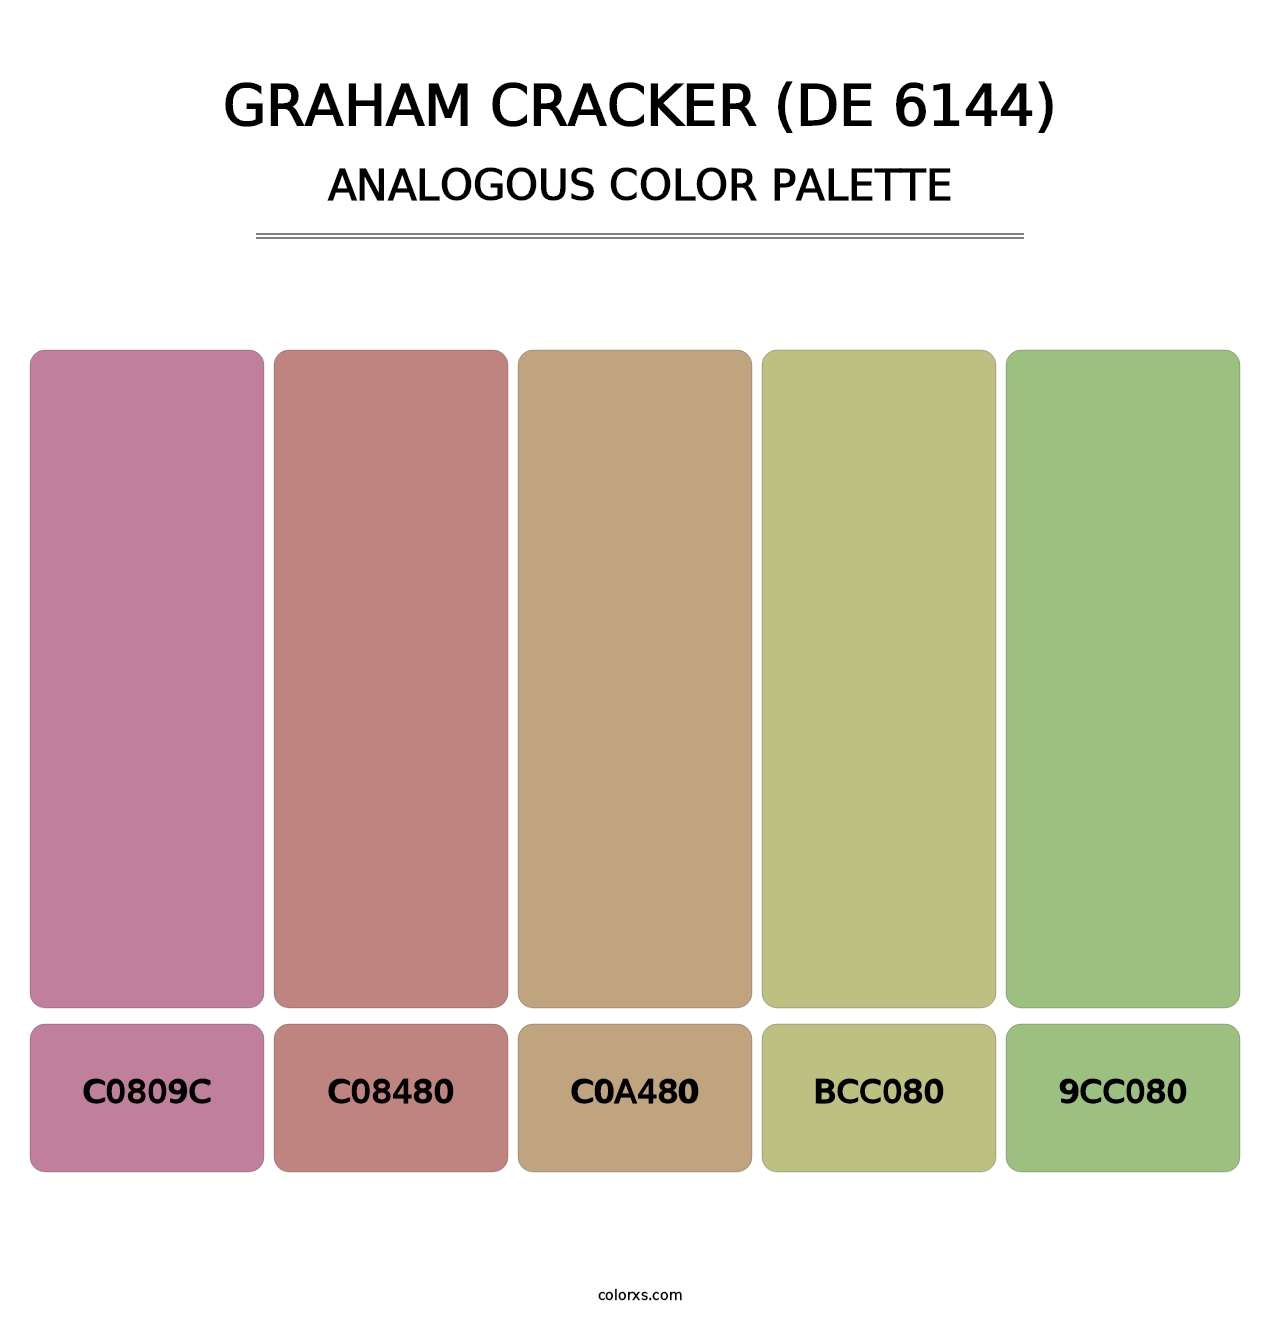 Graham Cracker (DE 6144) - Analogous Color Palette